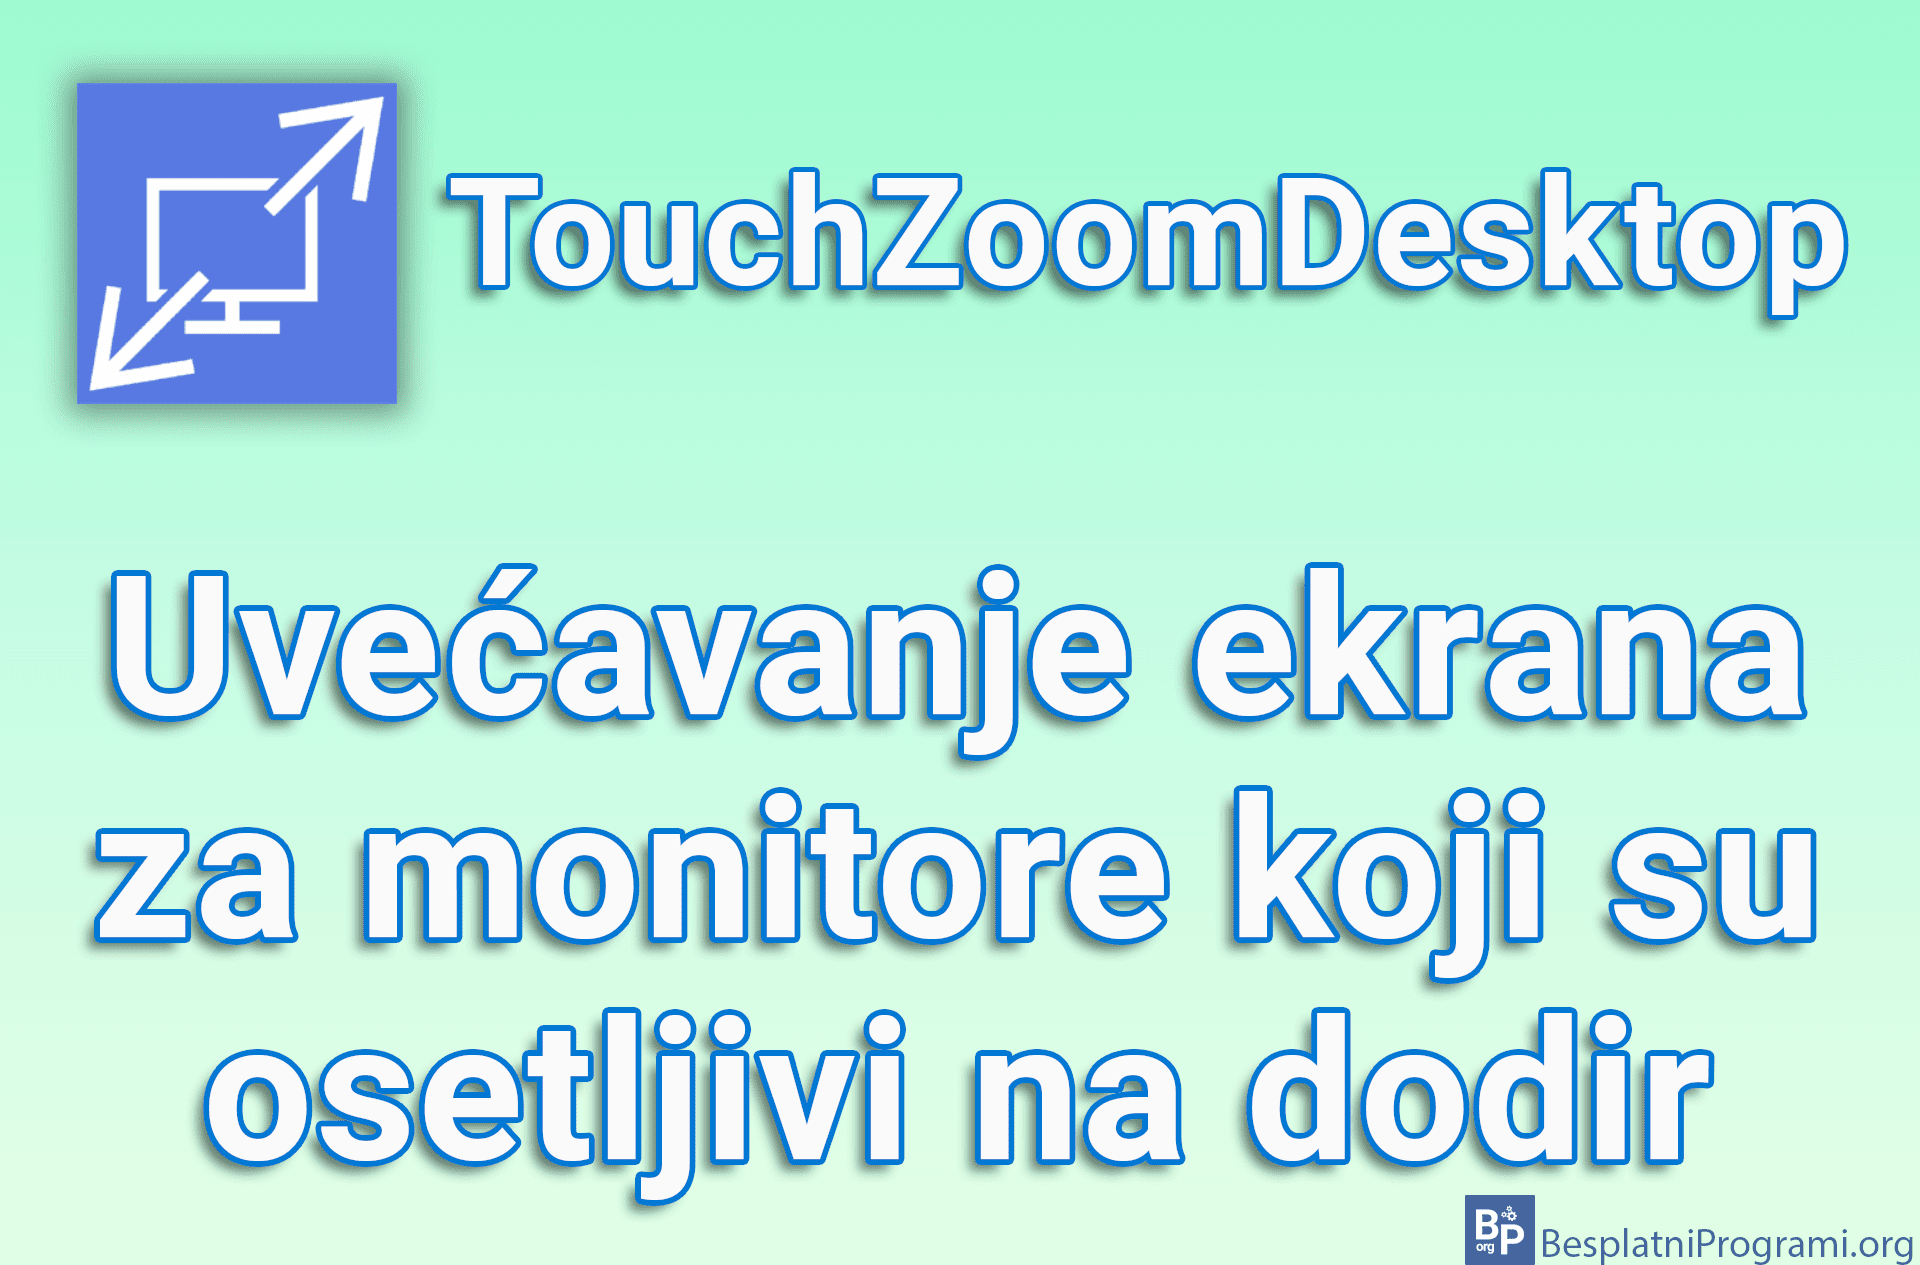 TouchZoomDesktop - Uvećavanje ekrana za monitore koji su osetljivi na dodir